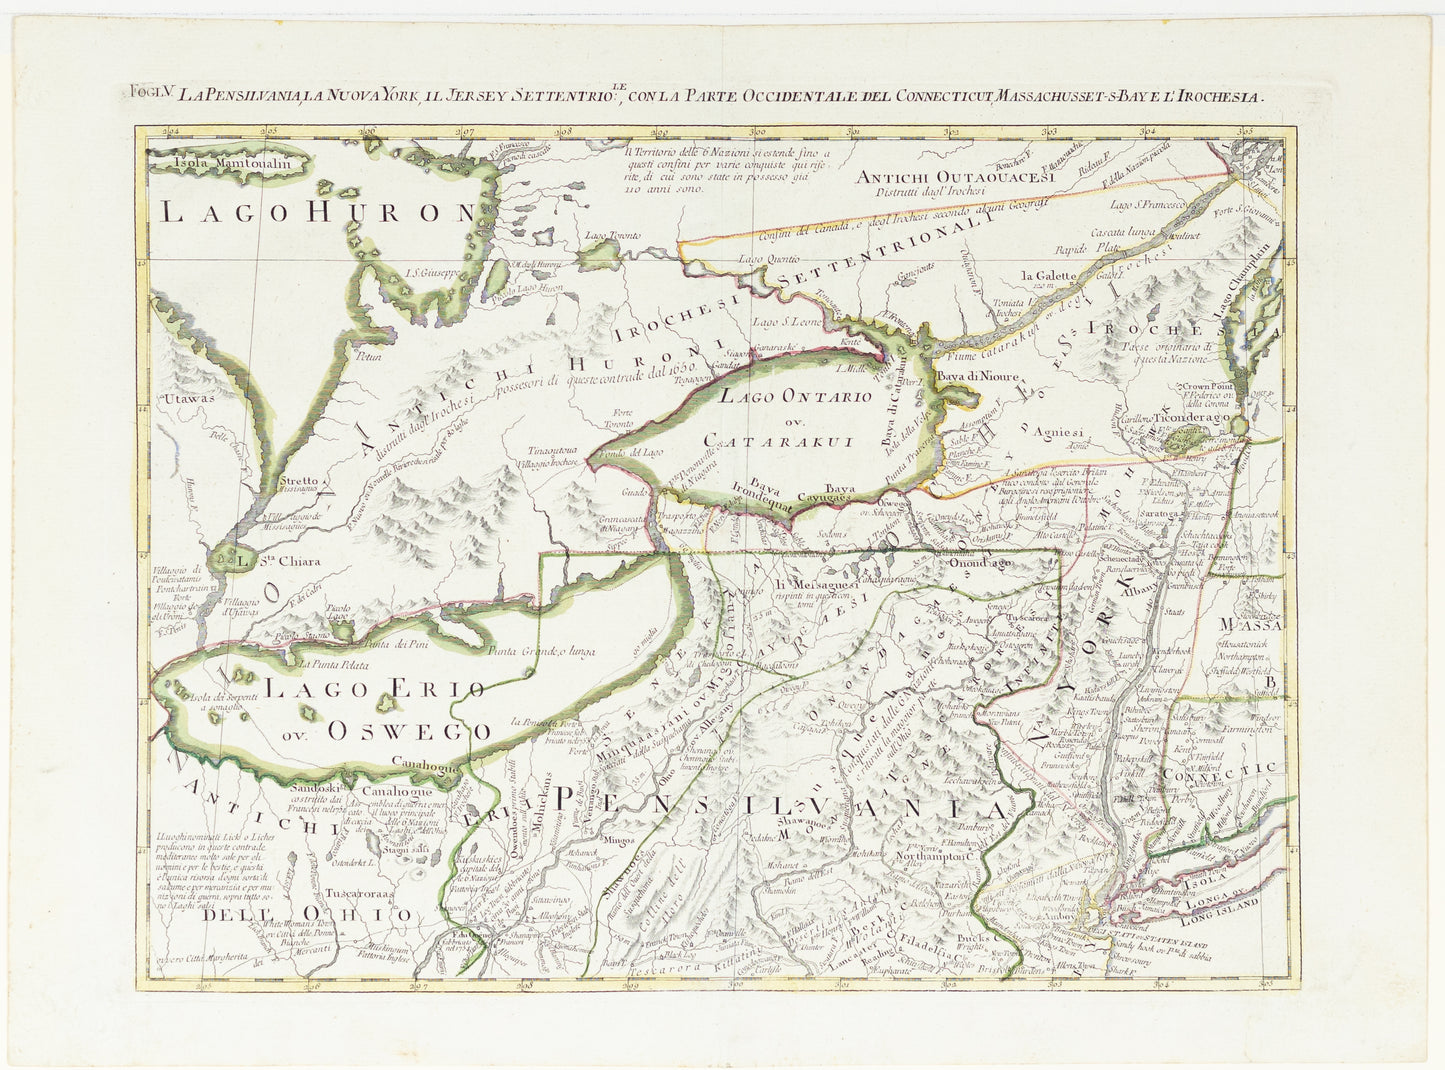 Zatta, Antonia. La Pensilvania, la Nuova York, il Jersey Settentriole: con la parte occidentale del Connecticut, Massachusset-s-bay e l'Irochesia. Venice, 1778.